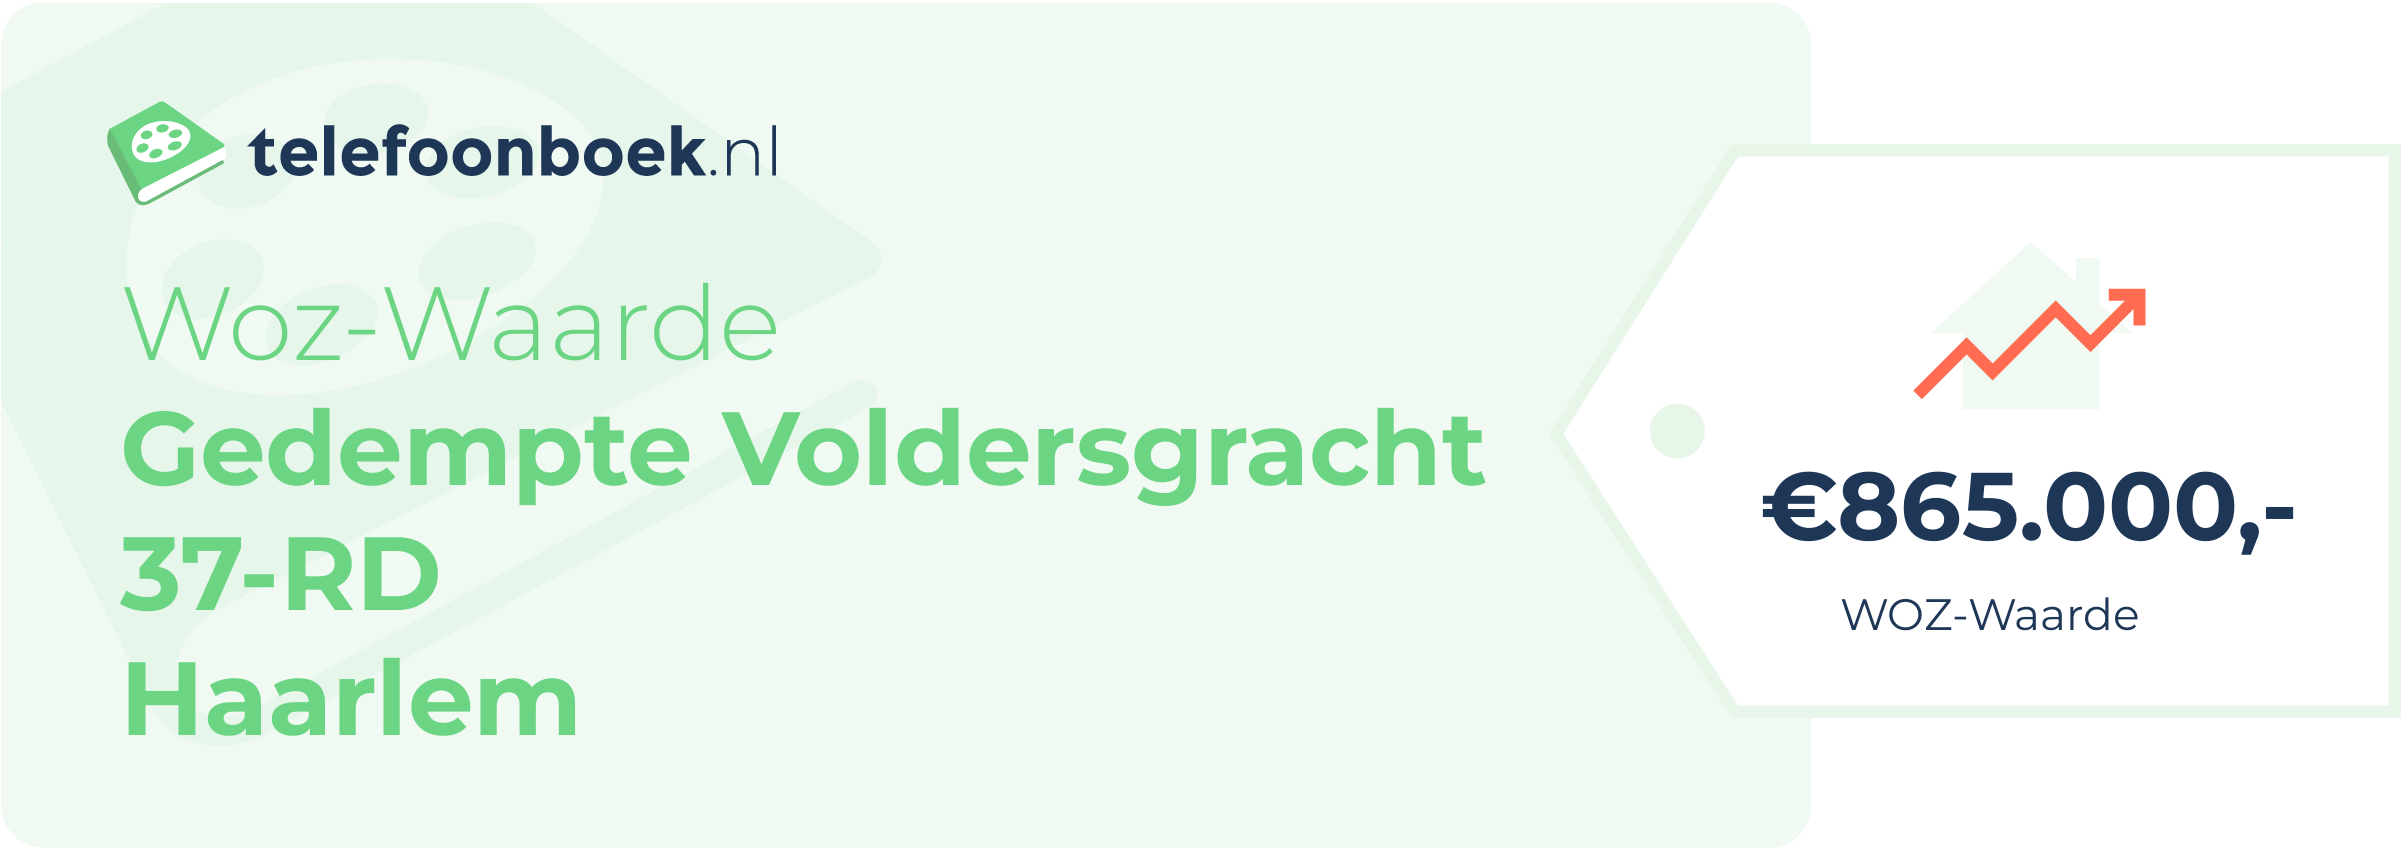 WOZ-waarde Gedempte Voldersgracht 37-RD Haarlem